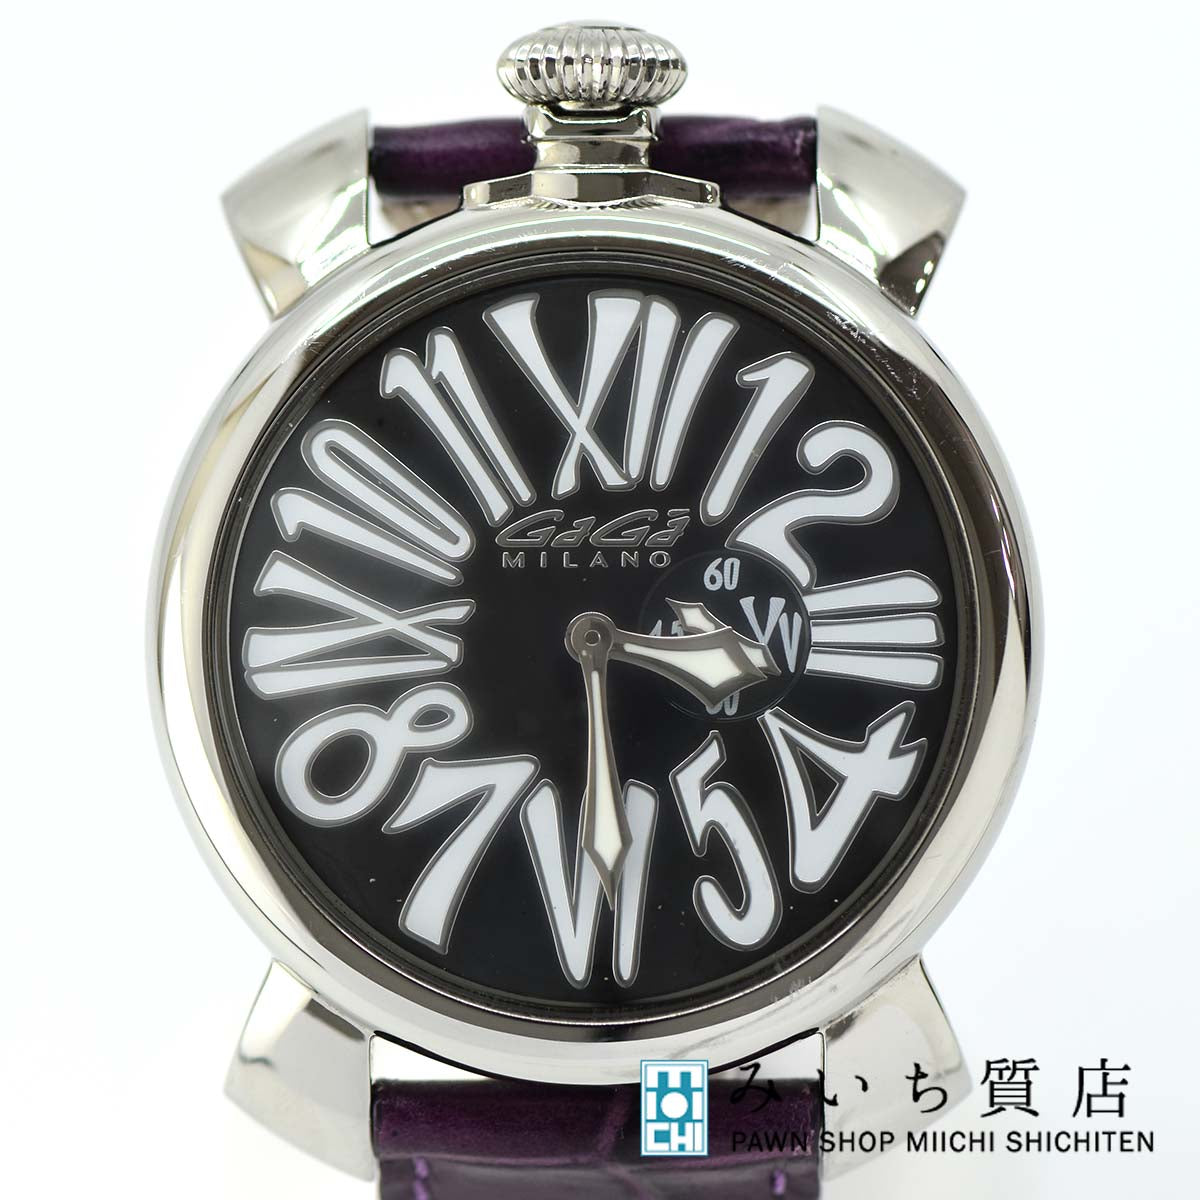 ガガミラノ マヌアーレ スリム 5080Slim46mm - 腕時計(アナログ)